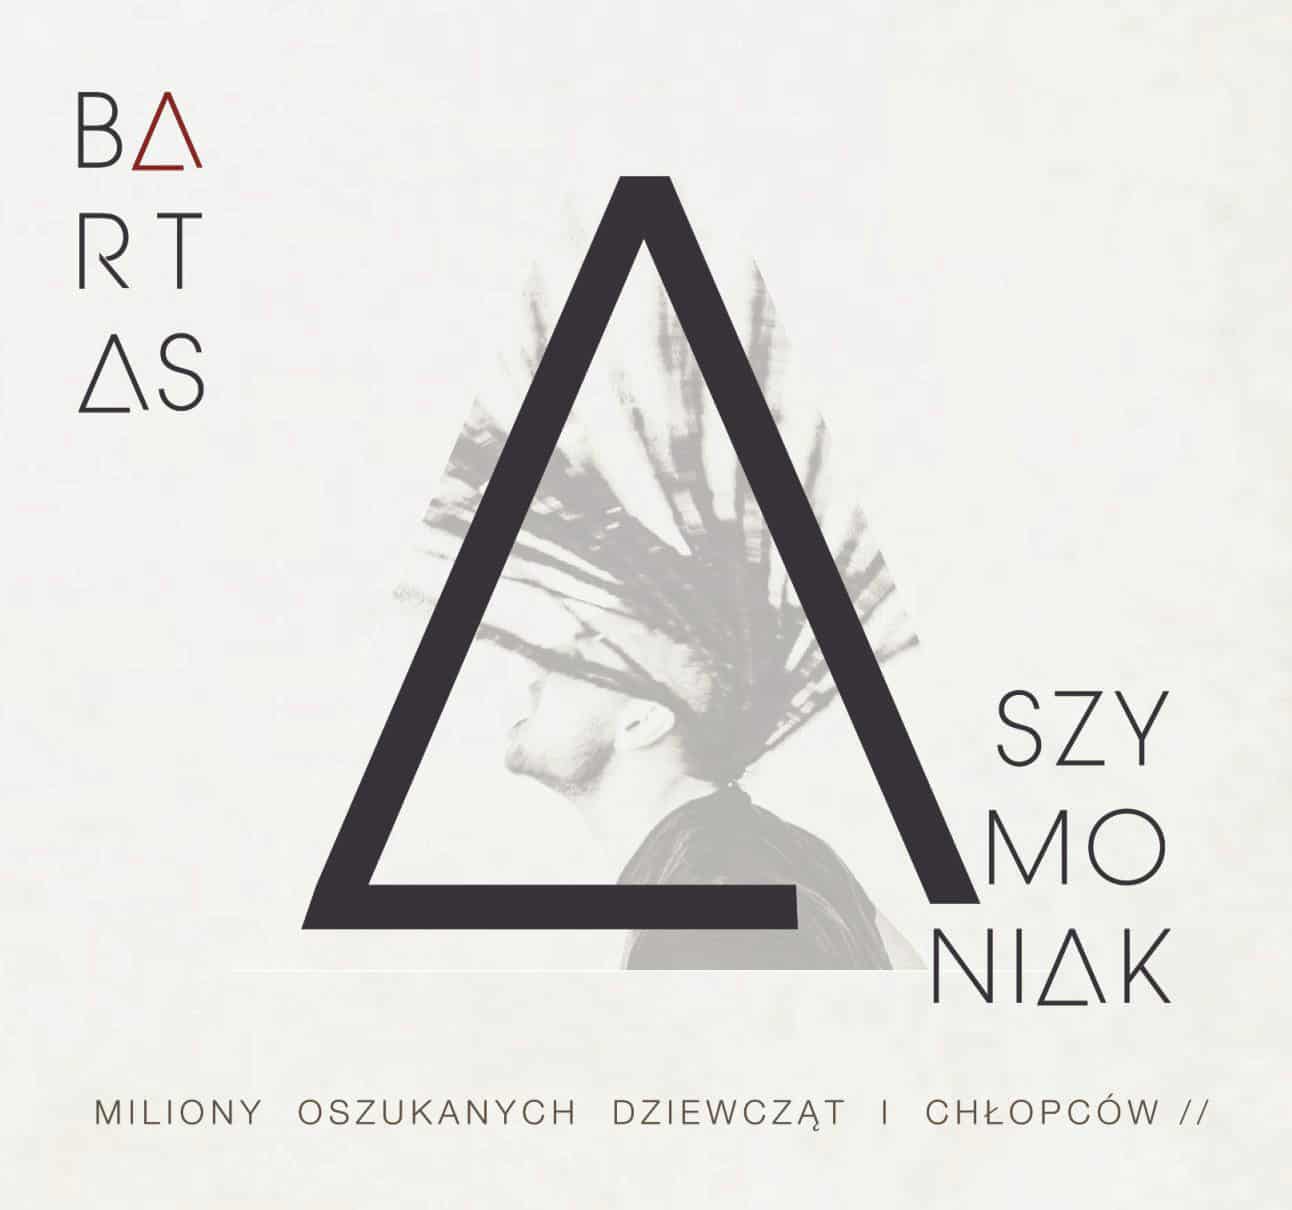 Bartas Szymoniak- premiera płyty już 8 czerwca